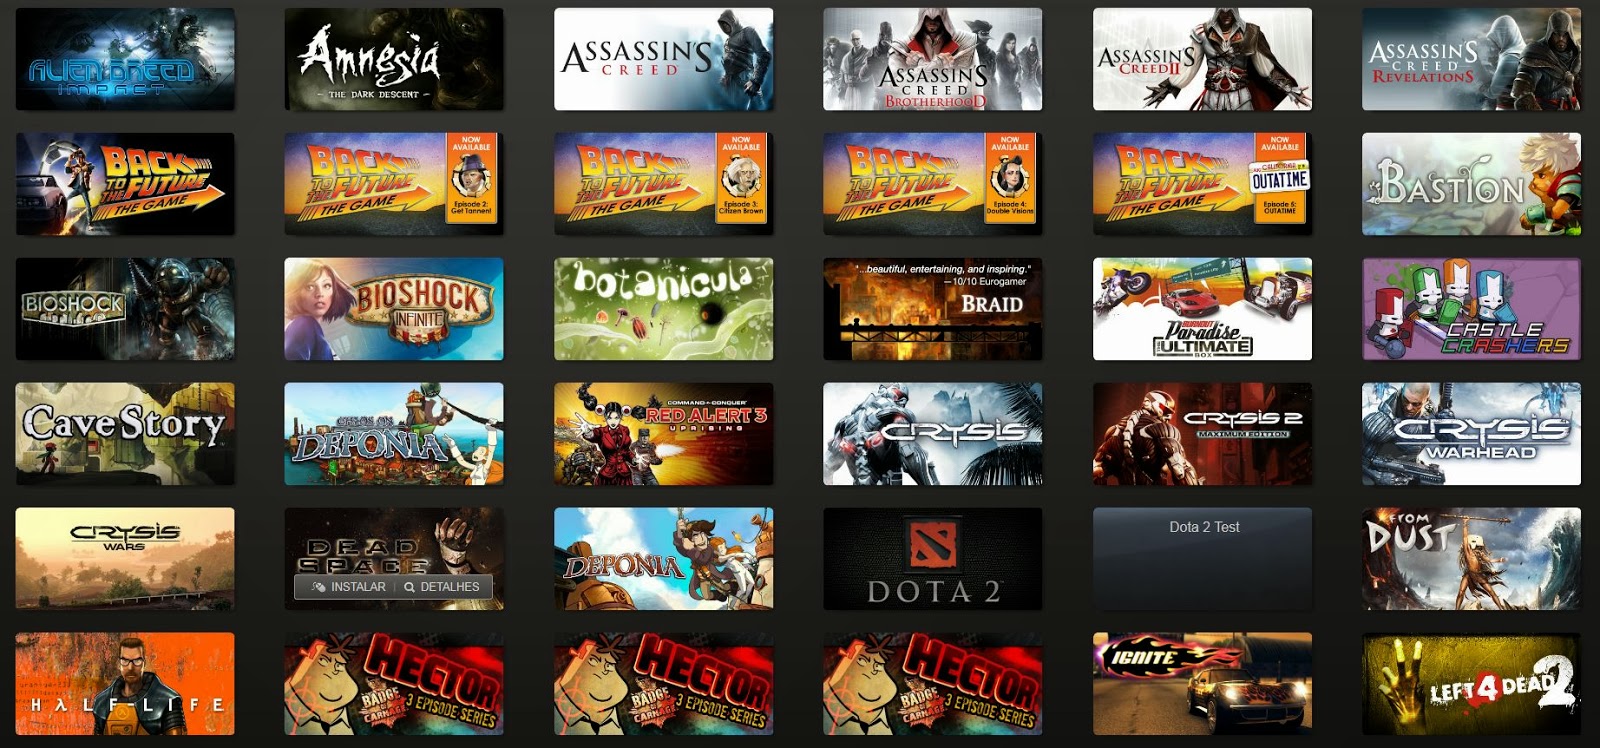 Valve divulga os melhores jogos do ano na Steam